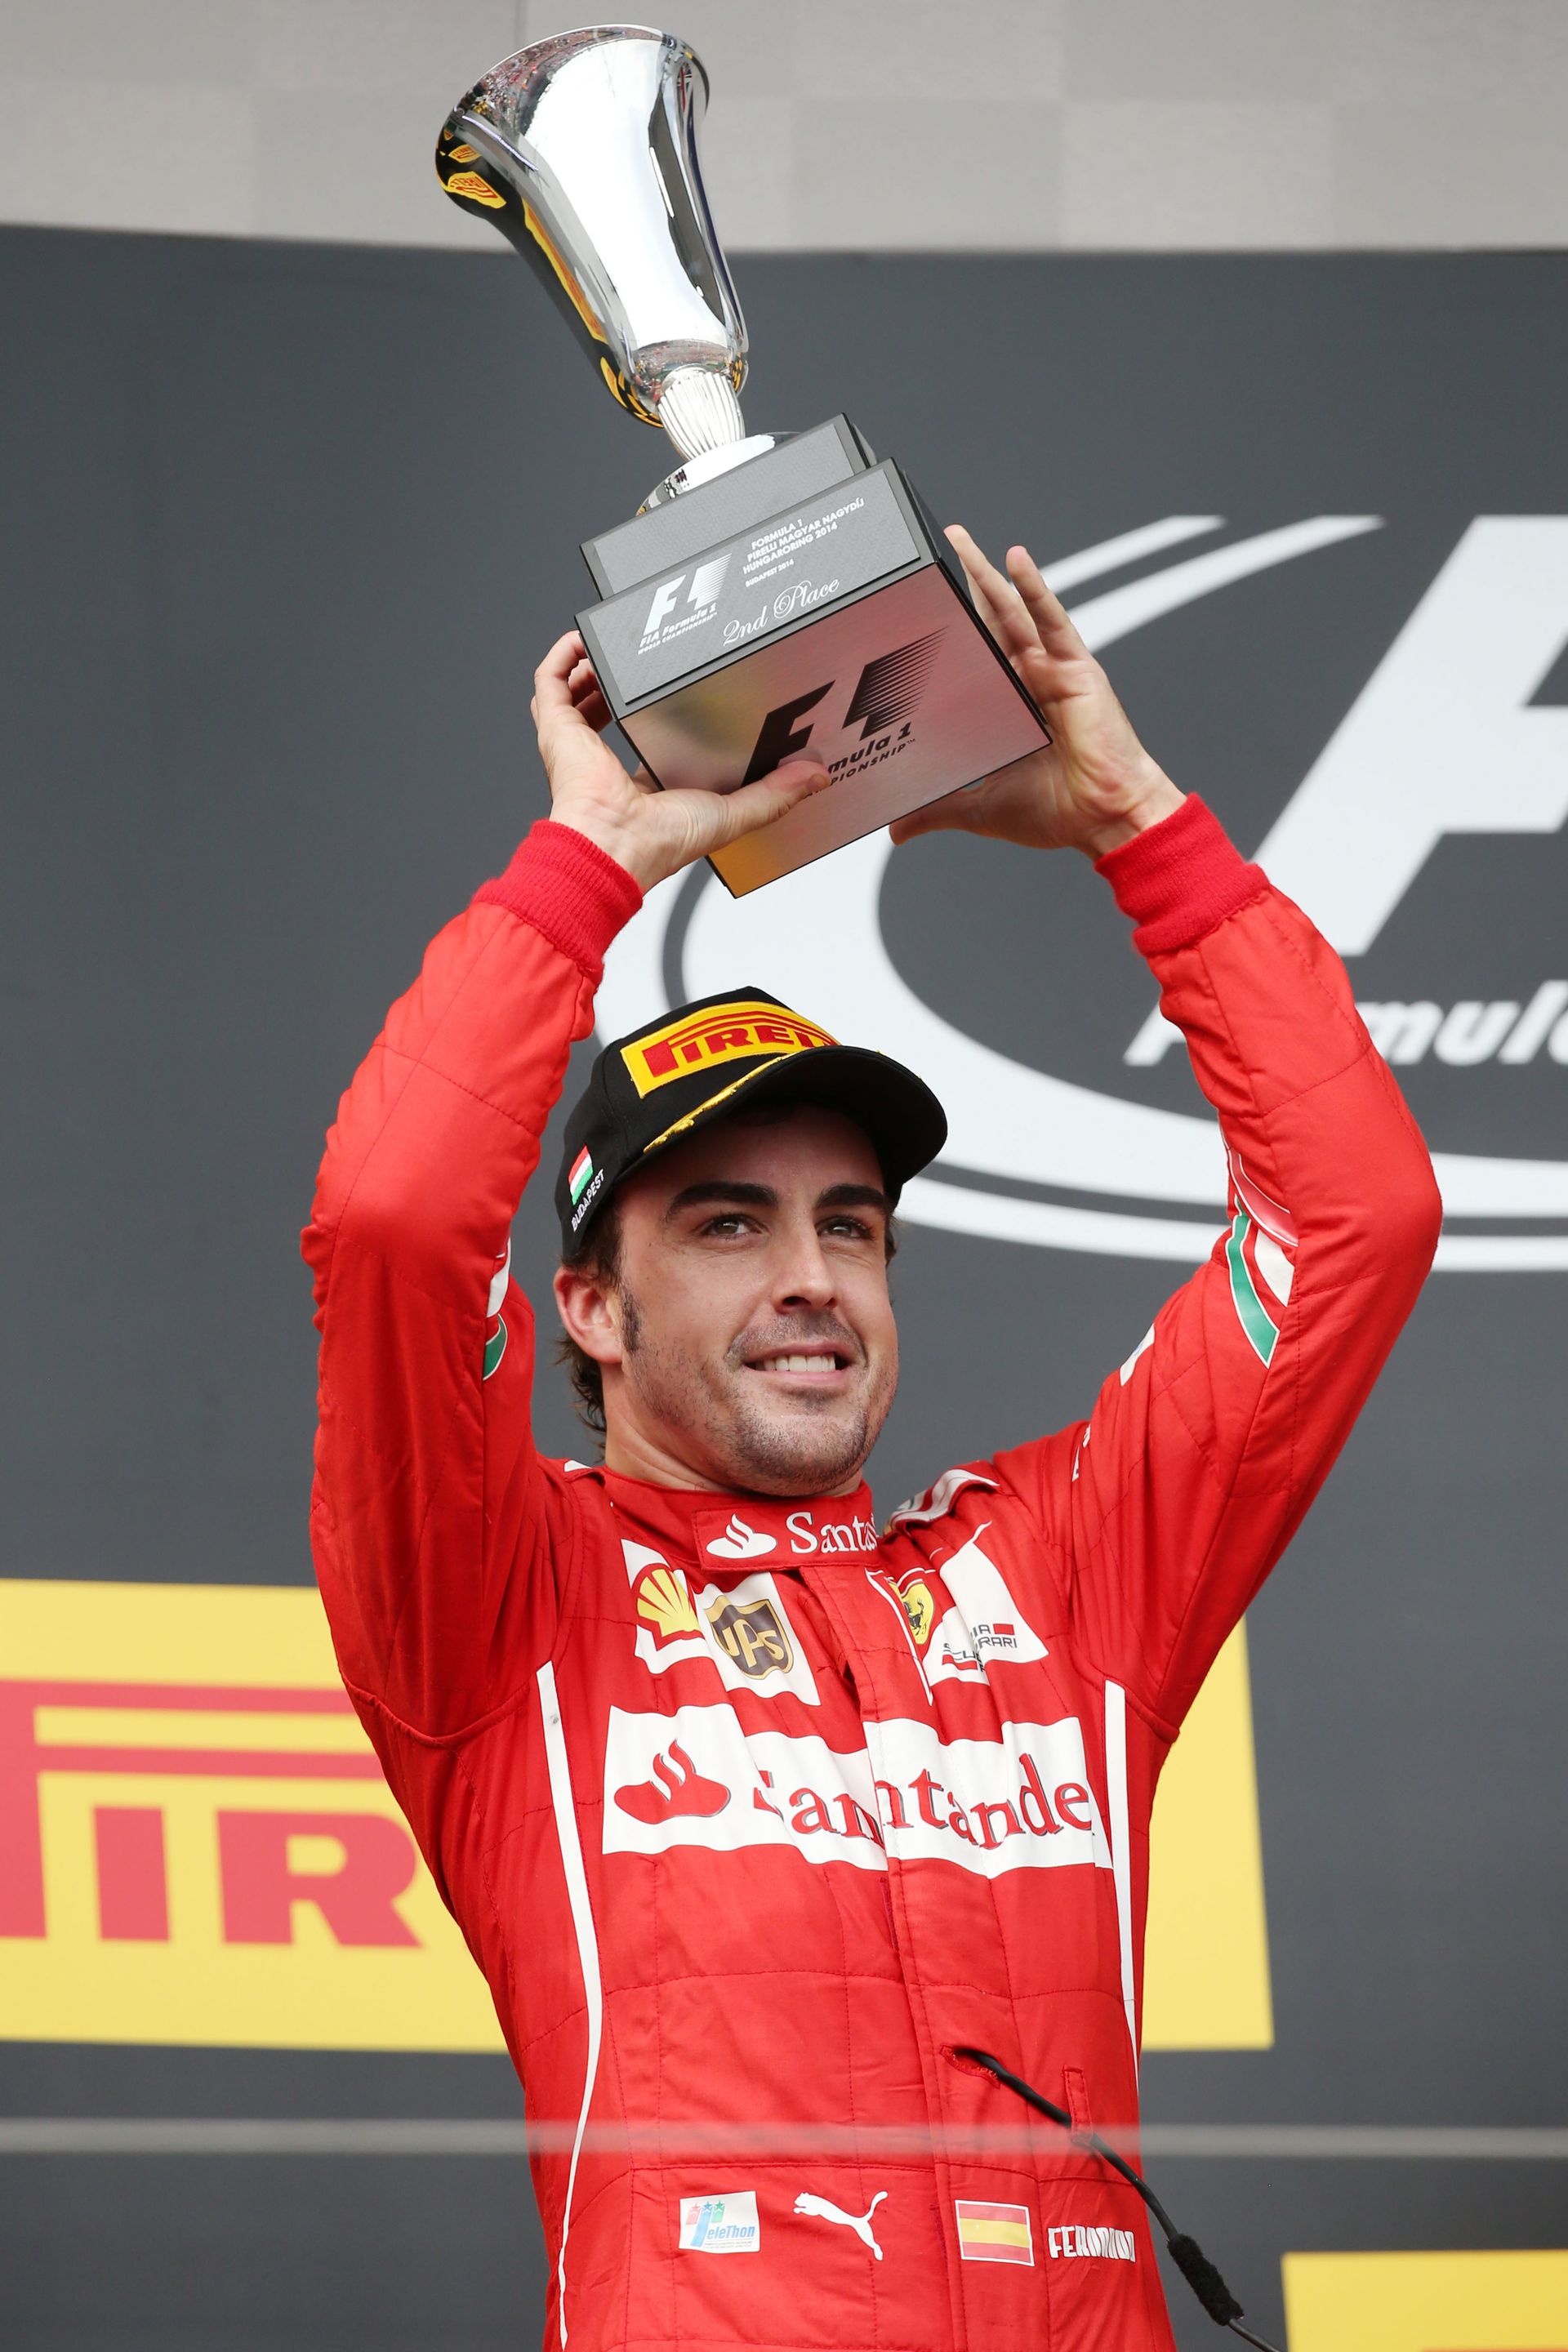 A spanyol pilóta a katari futam előtt a 2014-es Magyar GP-n, a Hungaroringen állhatott dobogóra, akkor a Ferrari tagjaként lett második/Fotó: Gettyimages